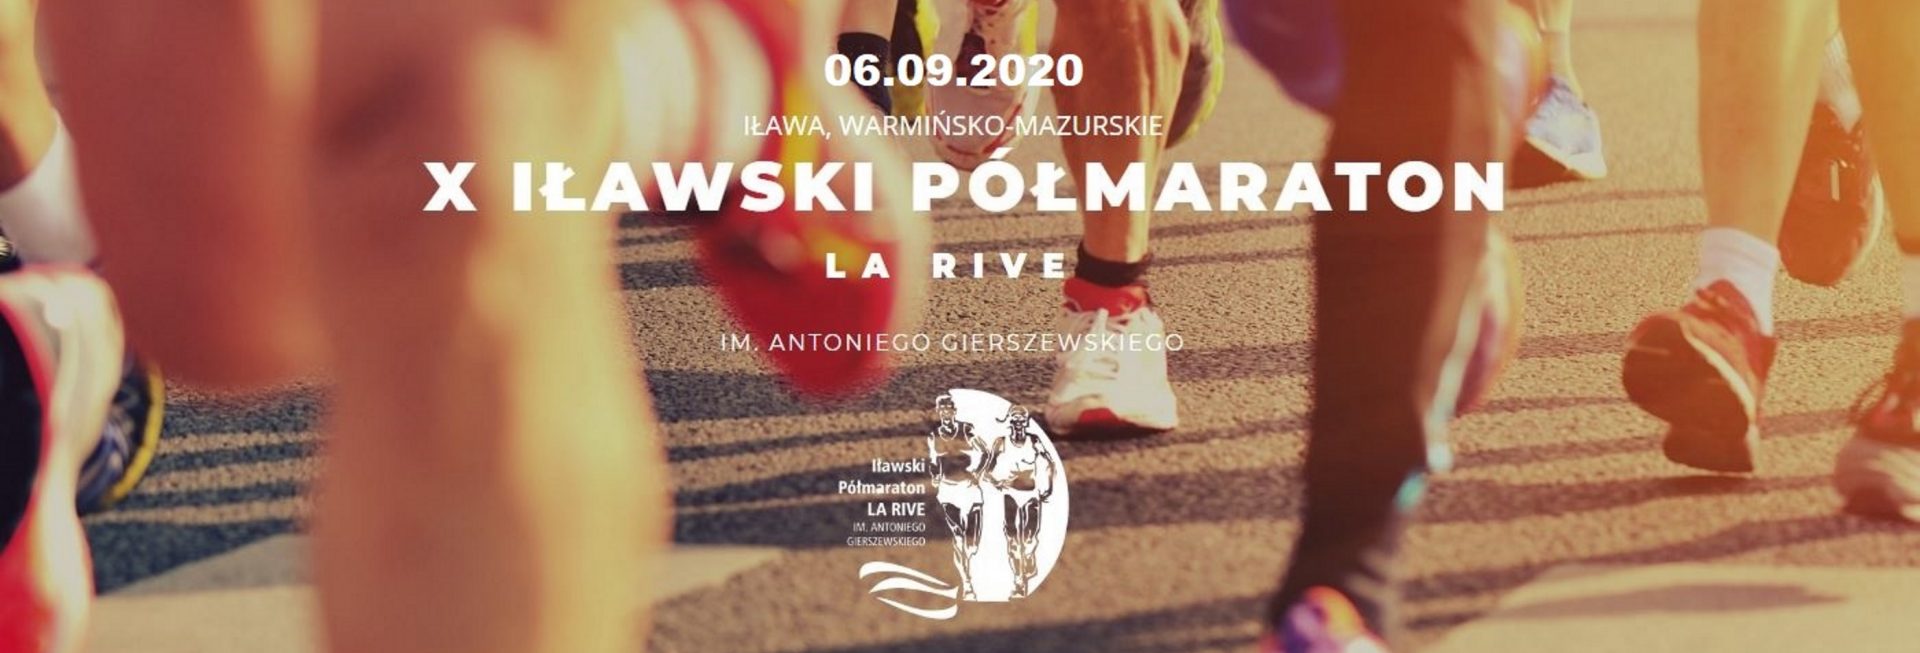 Plakat zapraszający do Iławy na X Iławski Półmaraton La Rive - Iława 2020. Plakat to zdjęcie nóg biegaczy podczas biegu. Dodatkowo na plakacie logo imprezy oraz napis tytułowy imprezy.